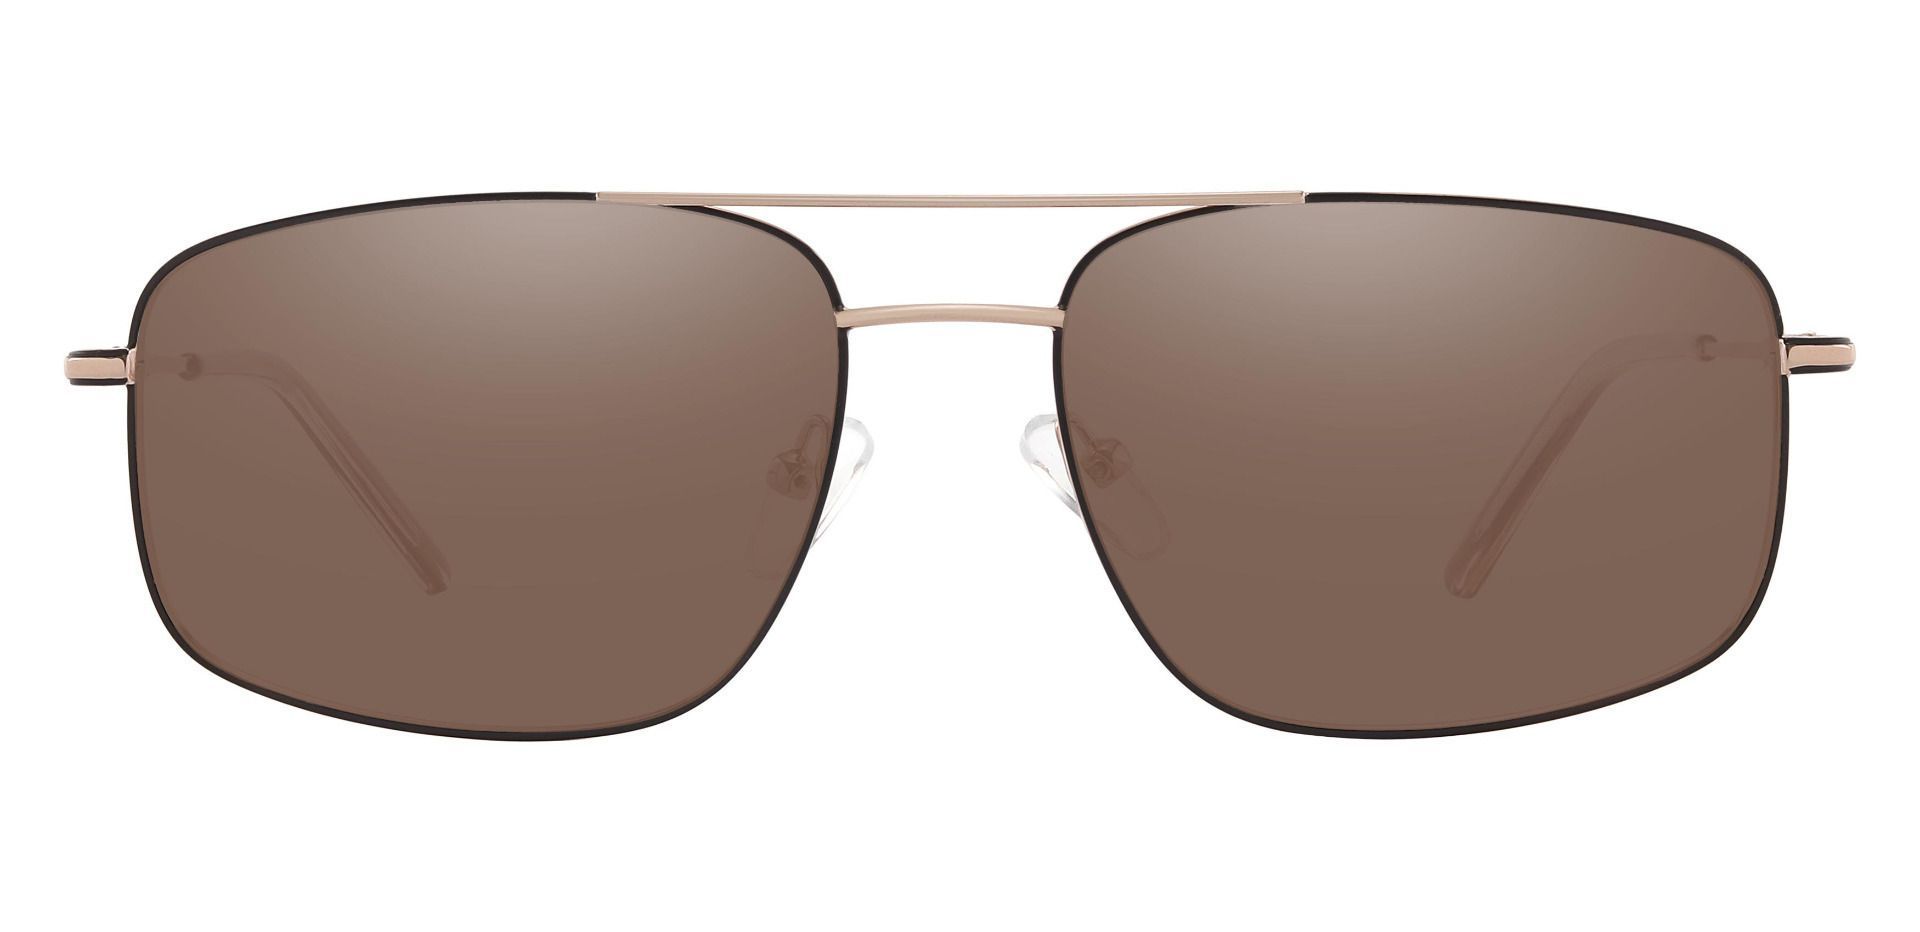 Turner Aviator Progressive Sunglasses - Gold Frame With Brown Lenses